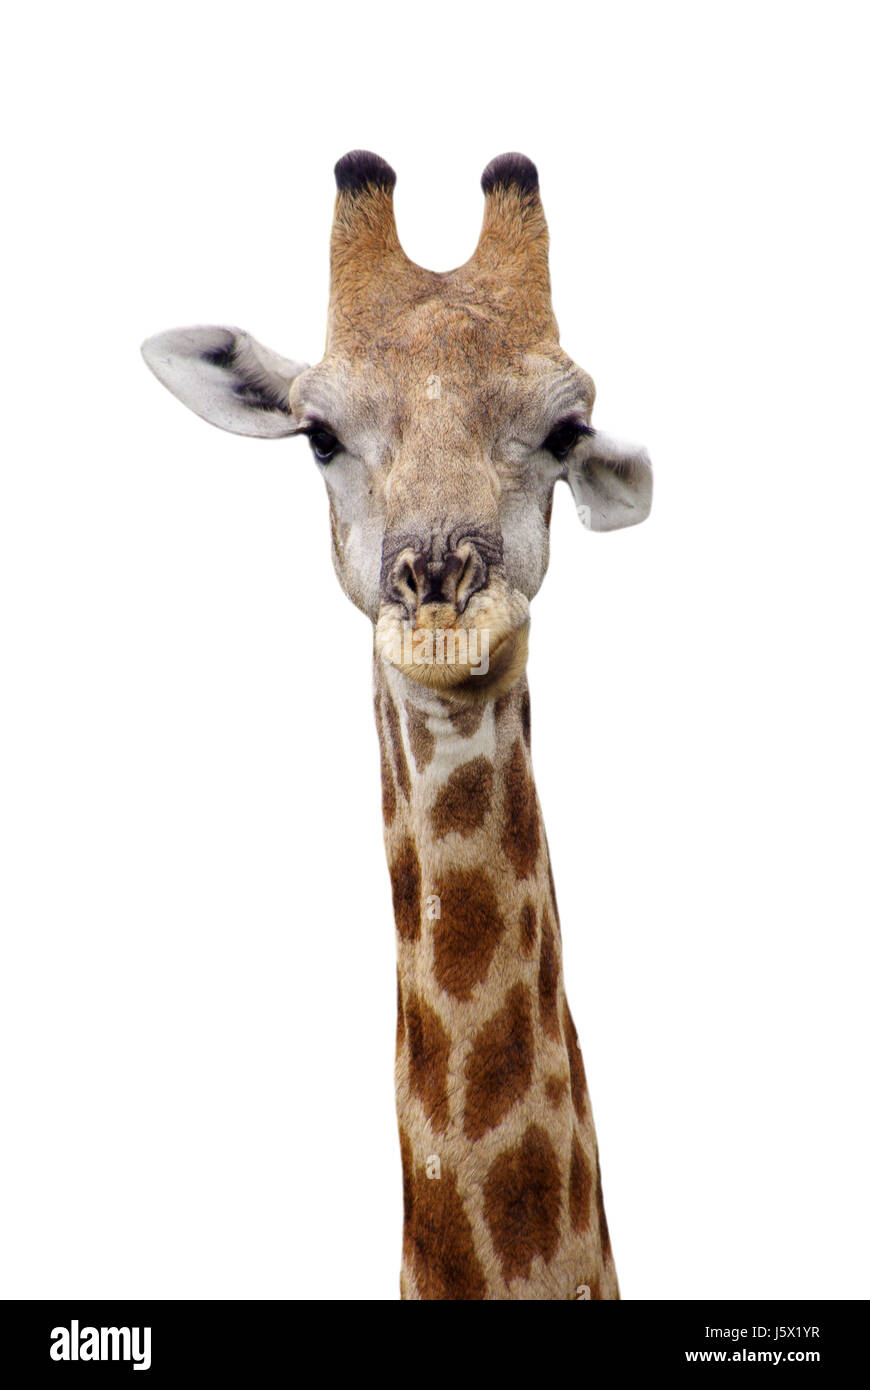 Girafe de front l'élaboration du modèle de forme design formation figure cou animal tête Banque D'Images